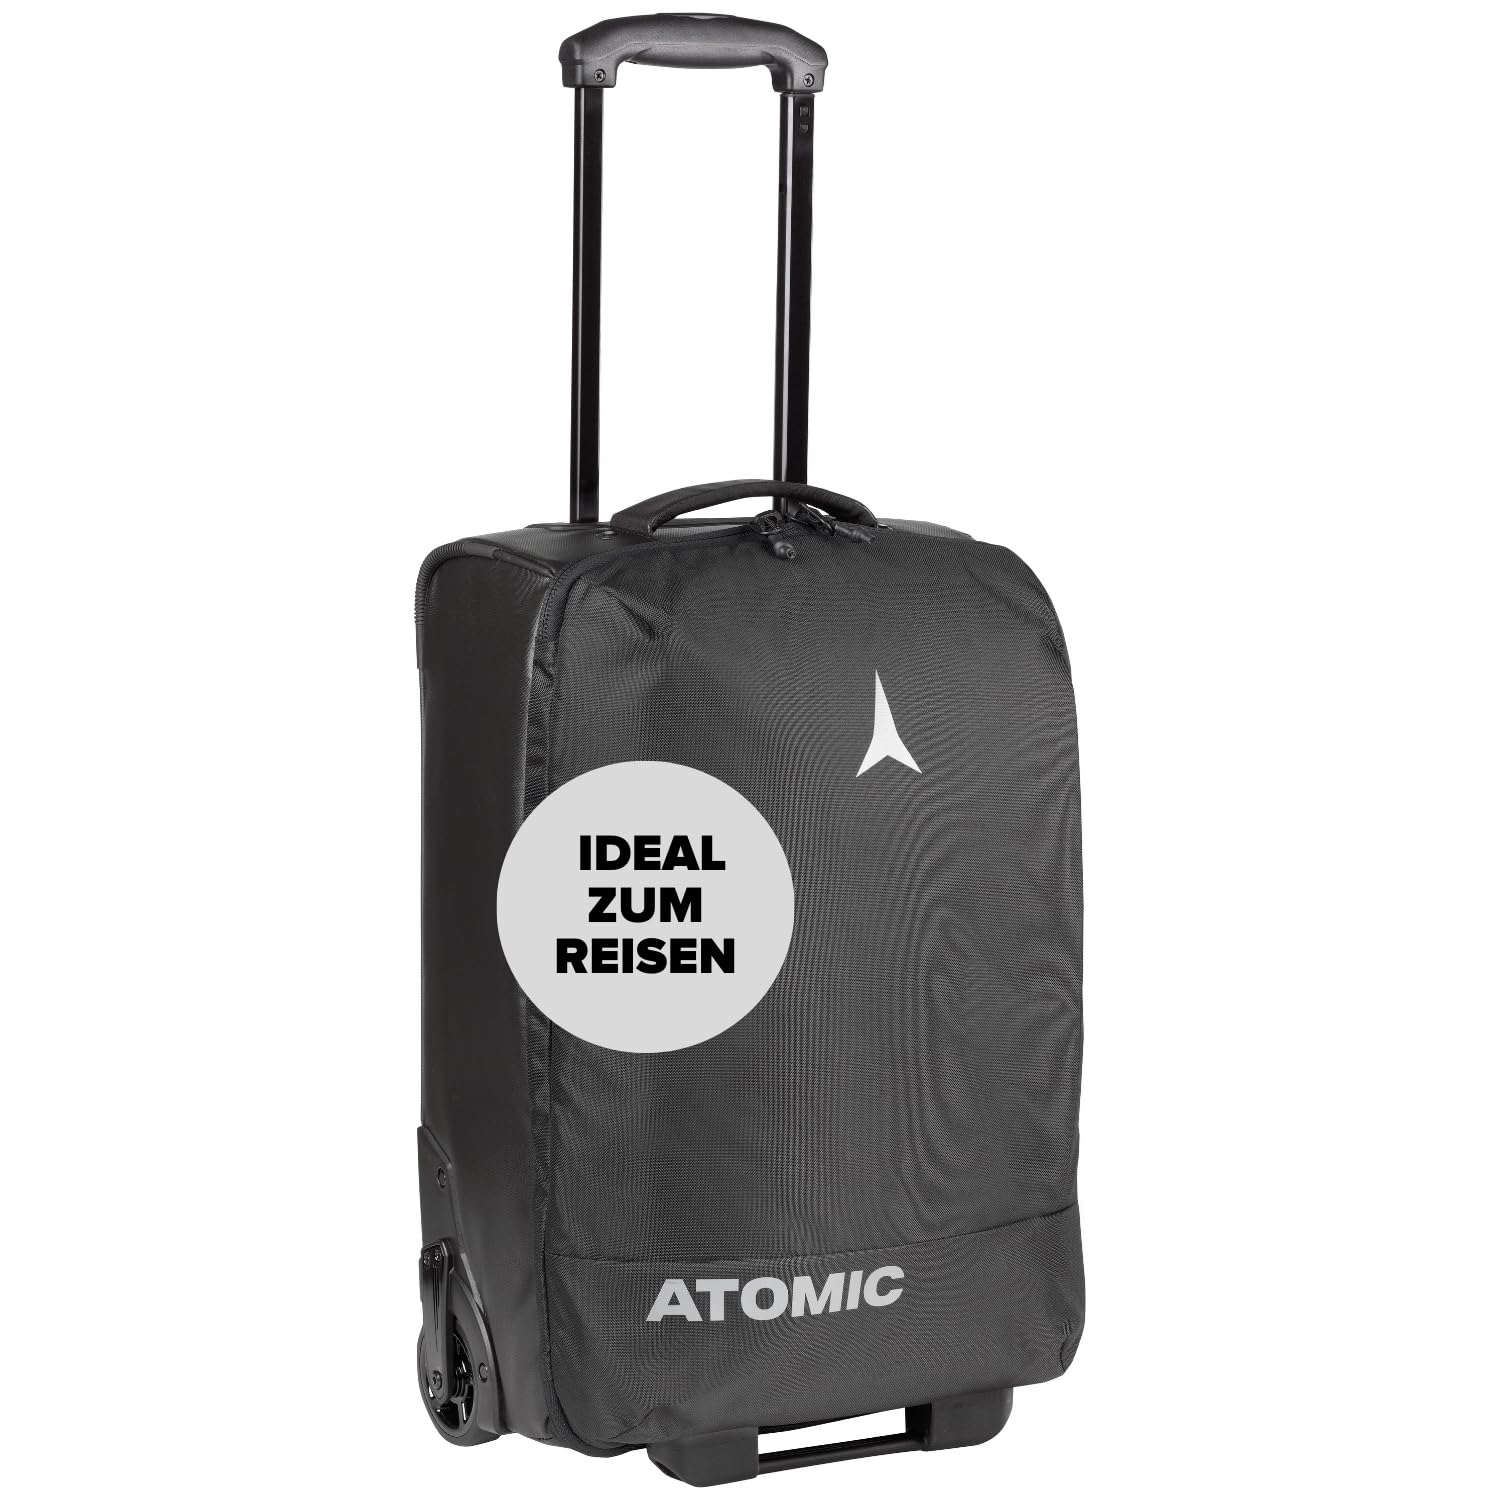 Atomic Cabin Trolley Schwarz - Handgepäck-Koffer - Großes Hauptfach mit Netztaschen & Fronttasche - Leichtlauf-Rollen - Gepolsterte Griffe - Wasser- & schmutzabweisend